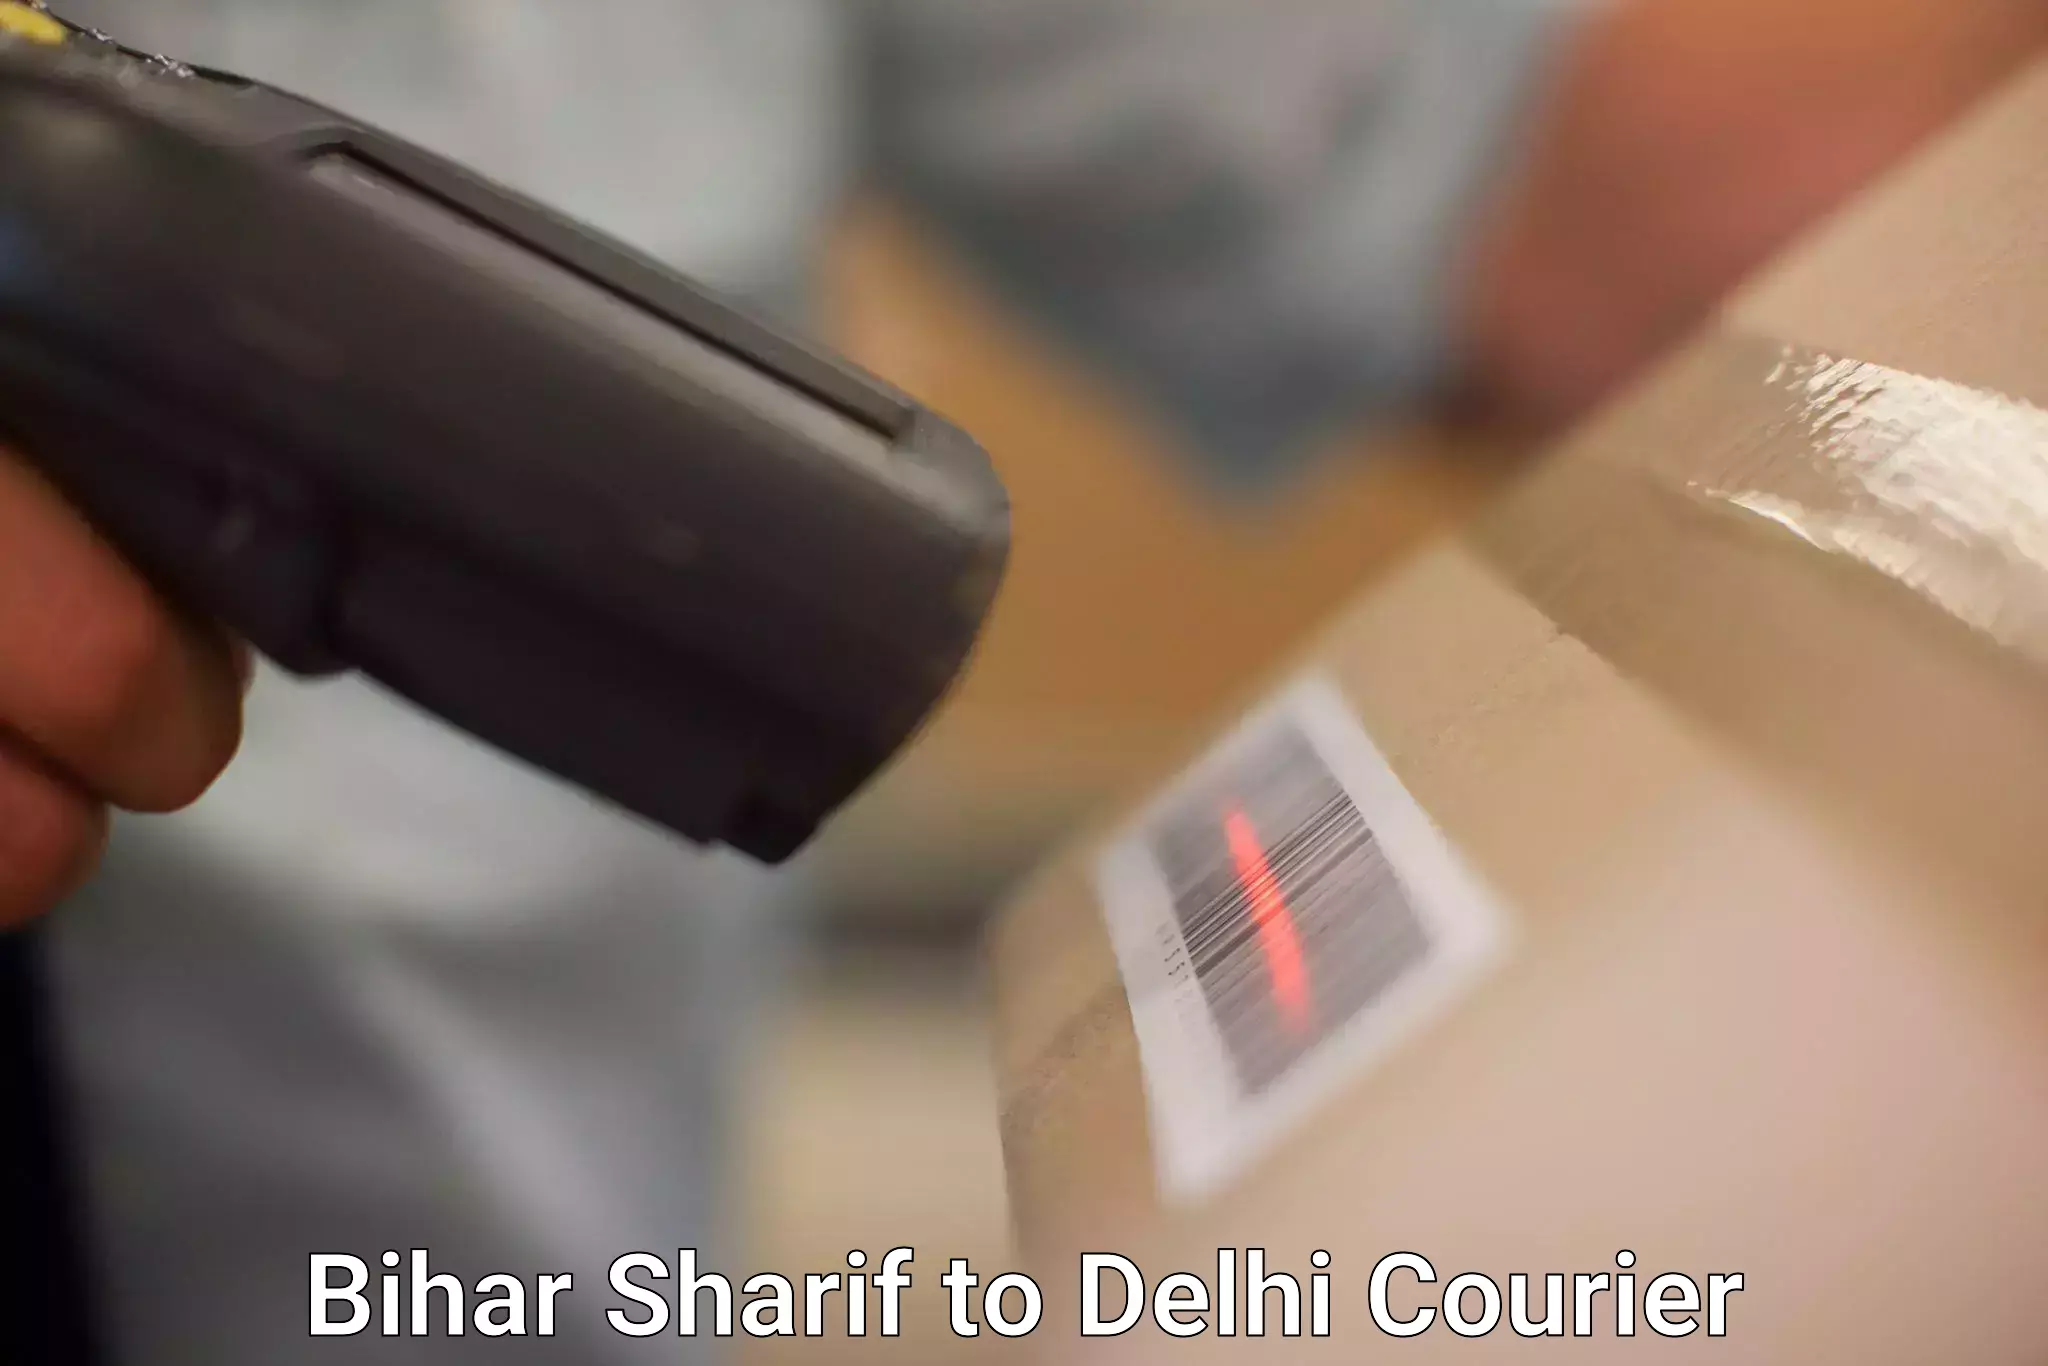 Express logistics providers Bihar Sharif to Delhi